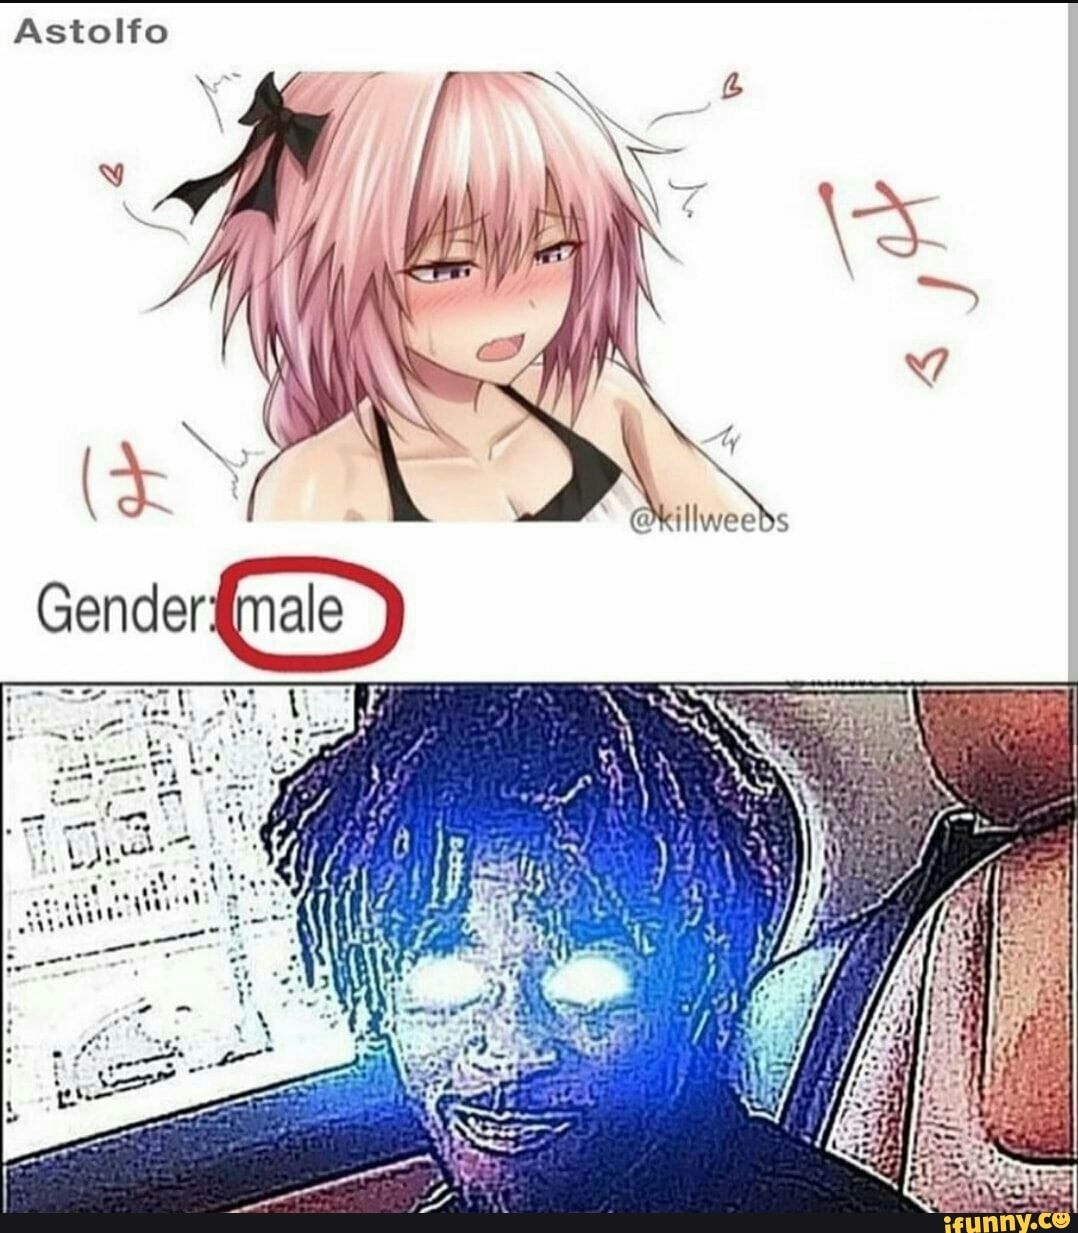 Astolfo gender